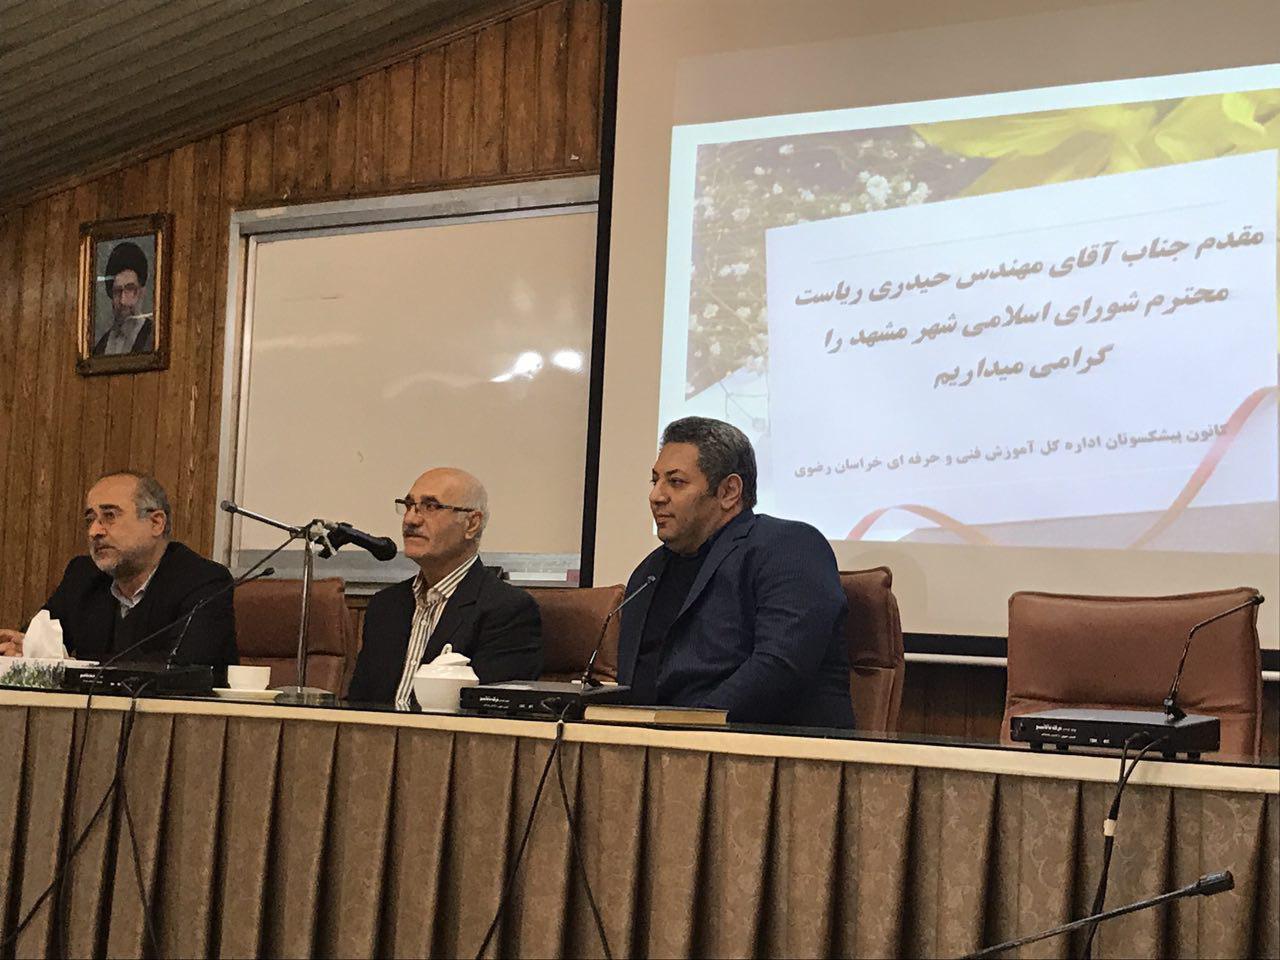 رییس شورای اسلامی شهر مشهد از اهتمام شورای شهر به توسعه آموزش های مهارتی گفت